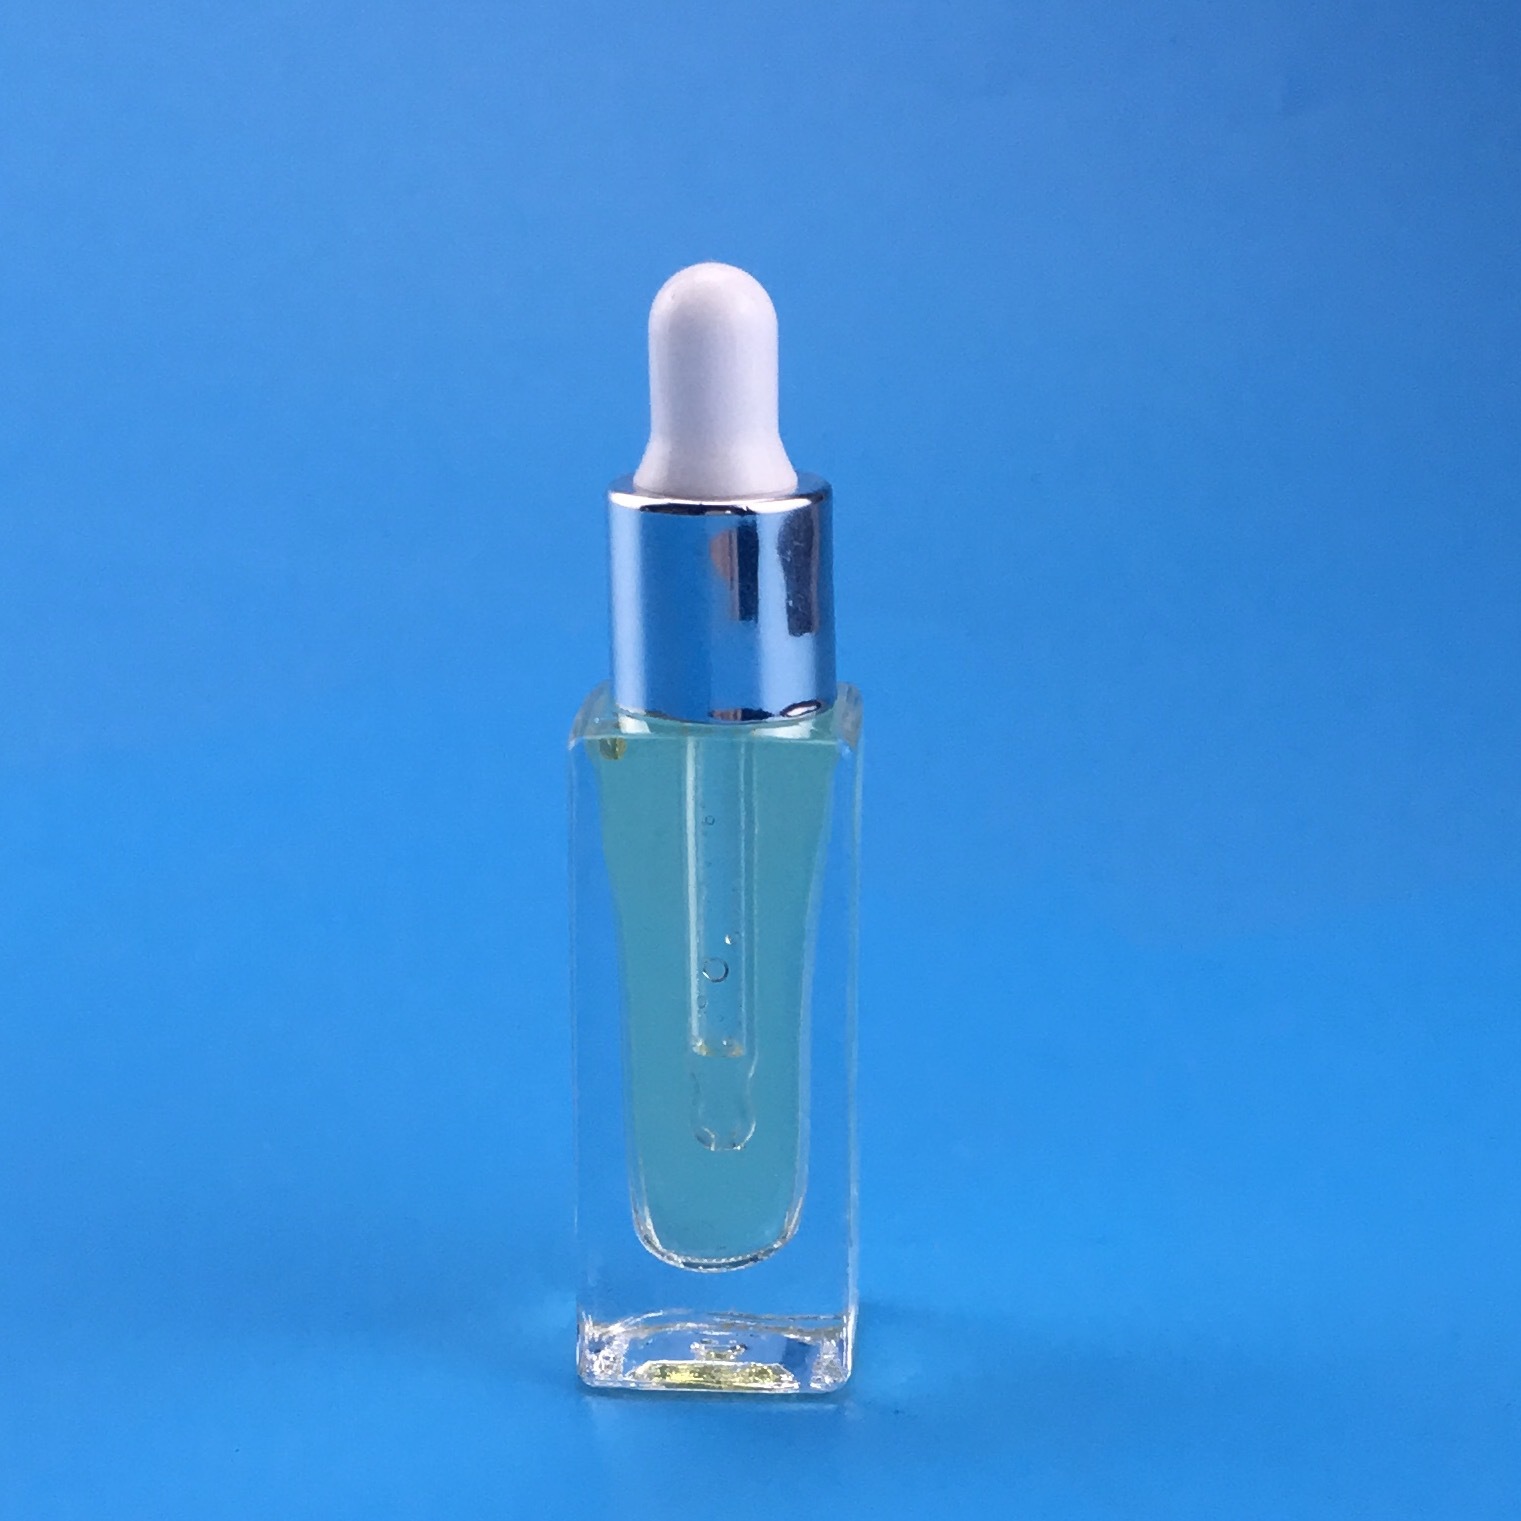 化妆品瓶 7ml玻璃瓶 滴管瓶 透明精油瓶 精华液瓶 试用分装瓶示例图1